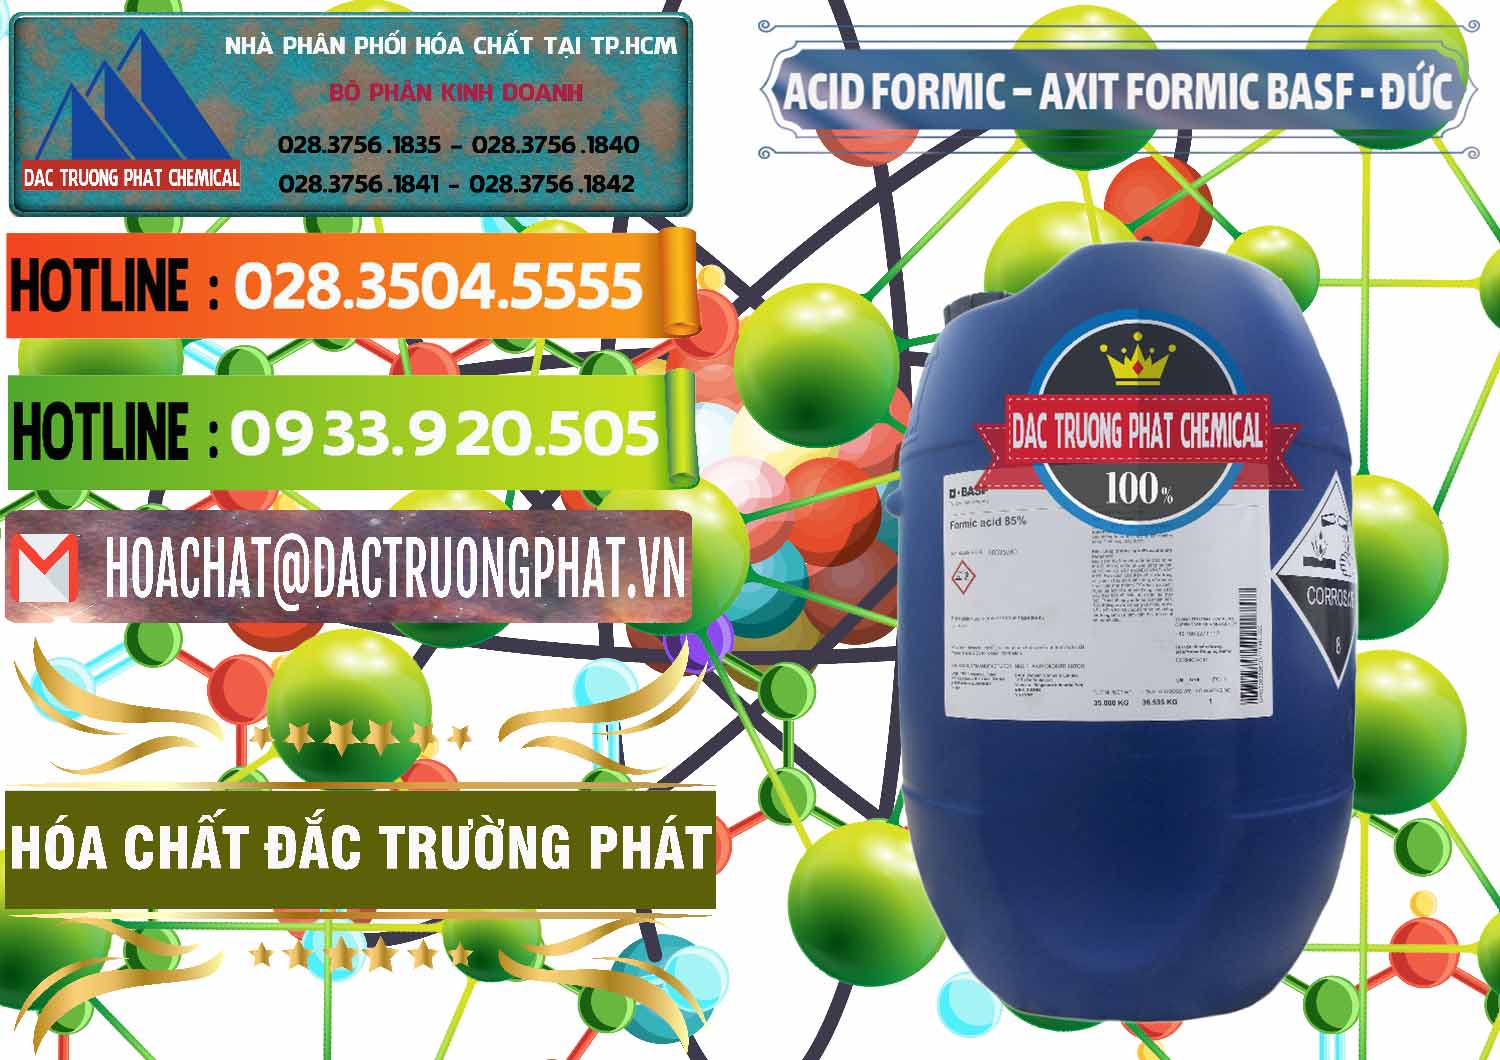 Nơi kinh doanh & bán Acid Formic - Axit Formic BASF Đức Germany - 0028 - Cty chuyên cung cấp & bán hóa chất tại TP.HCM - cungcaphoachat.com.vn